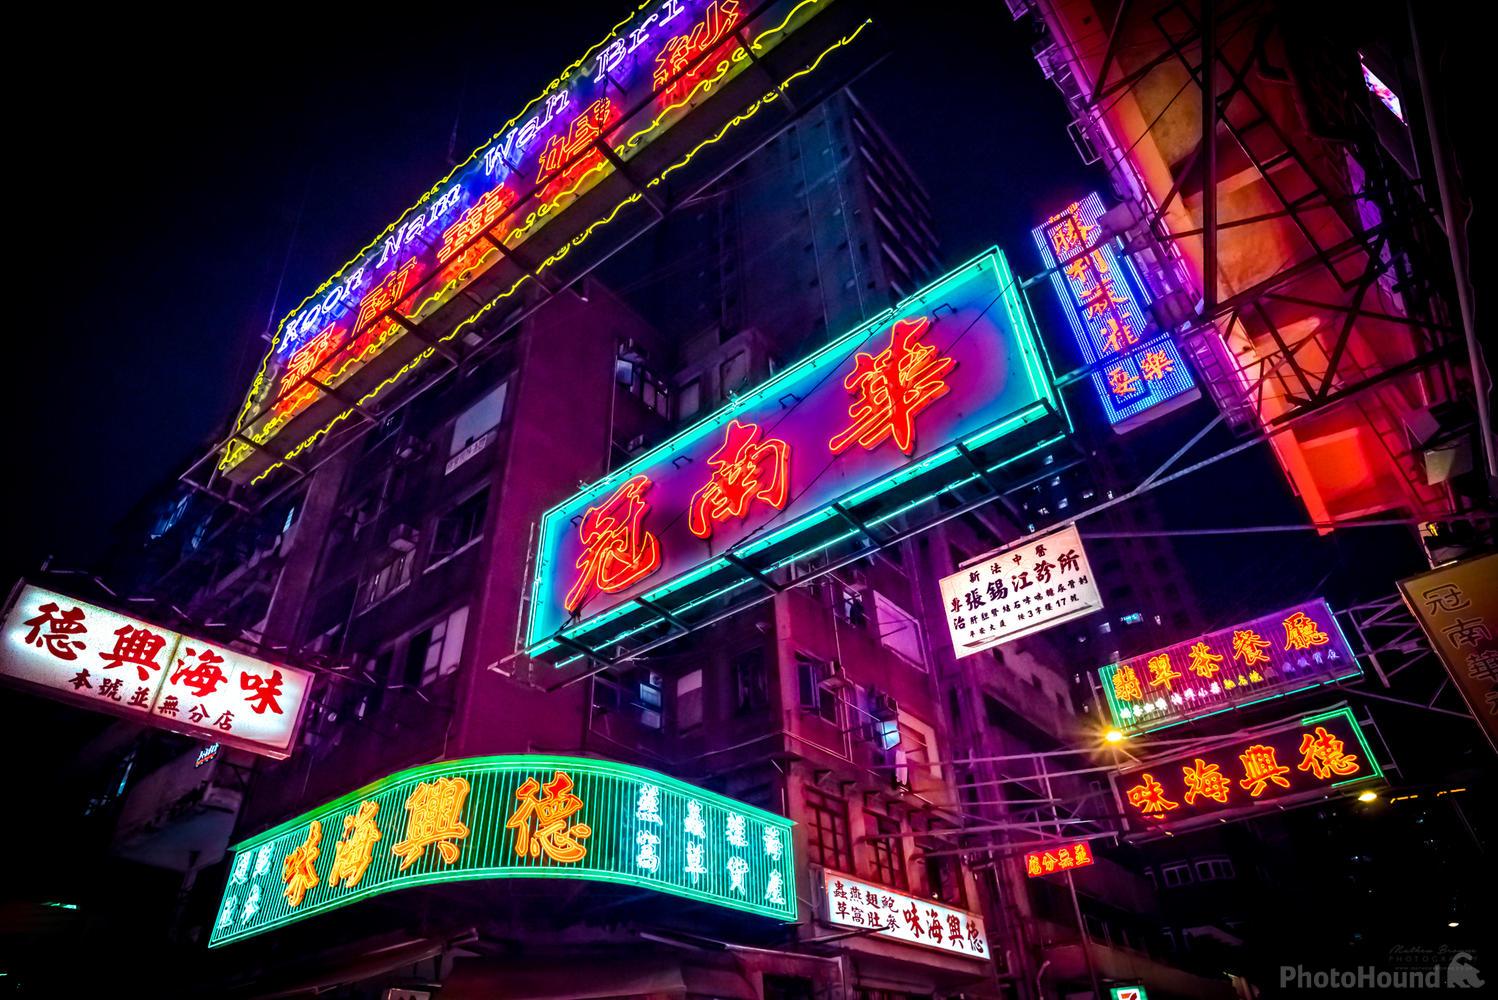 Image of Kansu Street Neon Signs by Mathew Browne